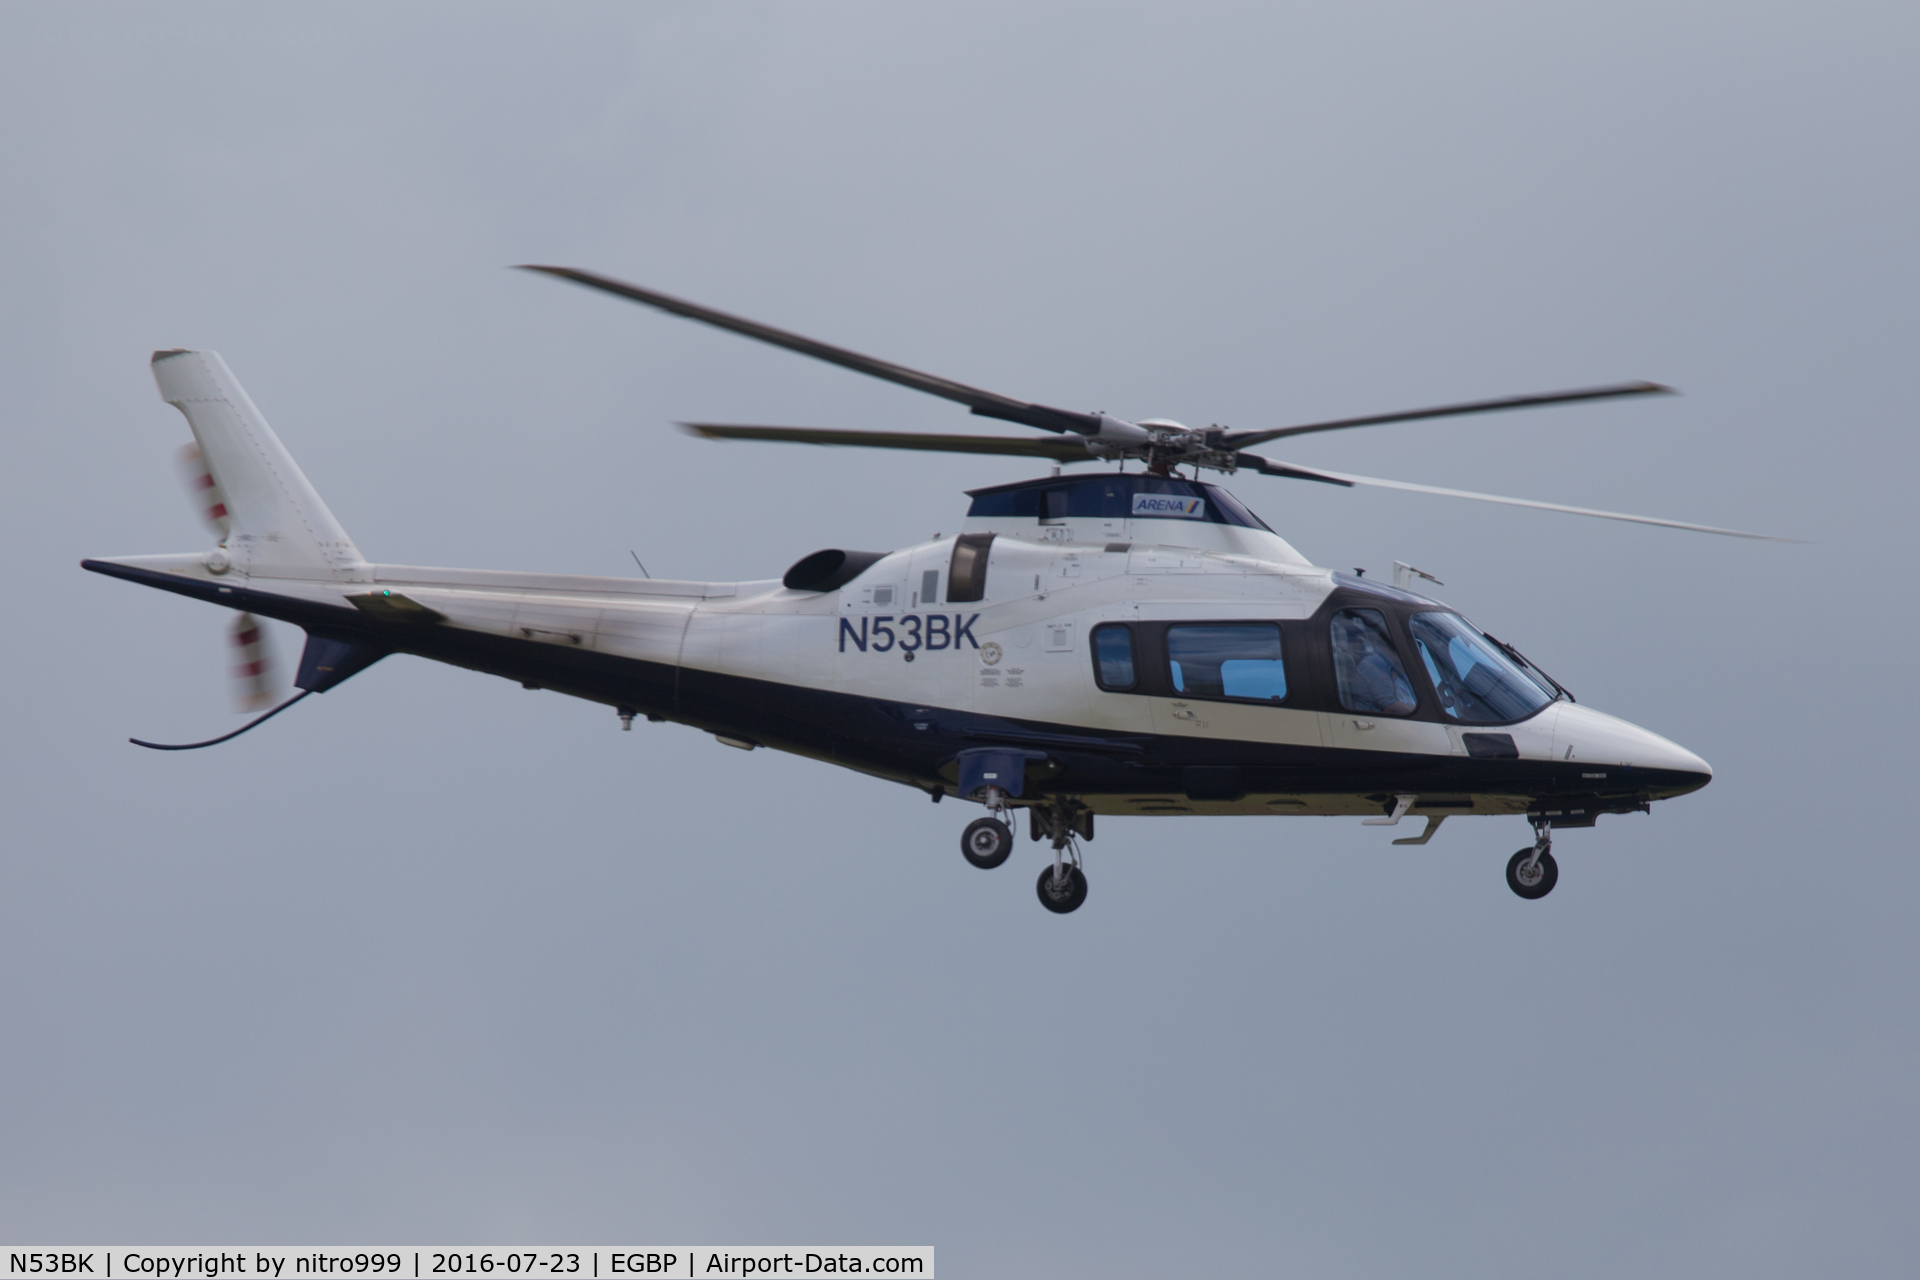 N53BK, 2009 Agusta A-109E C/N 11769, N53BK